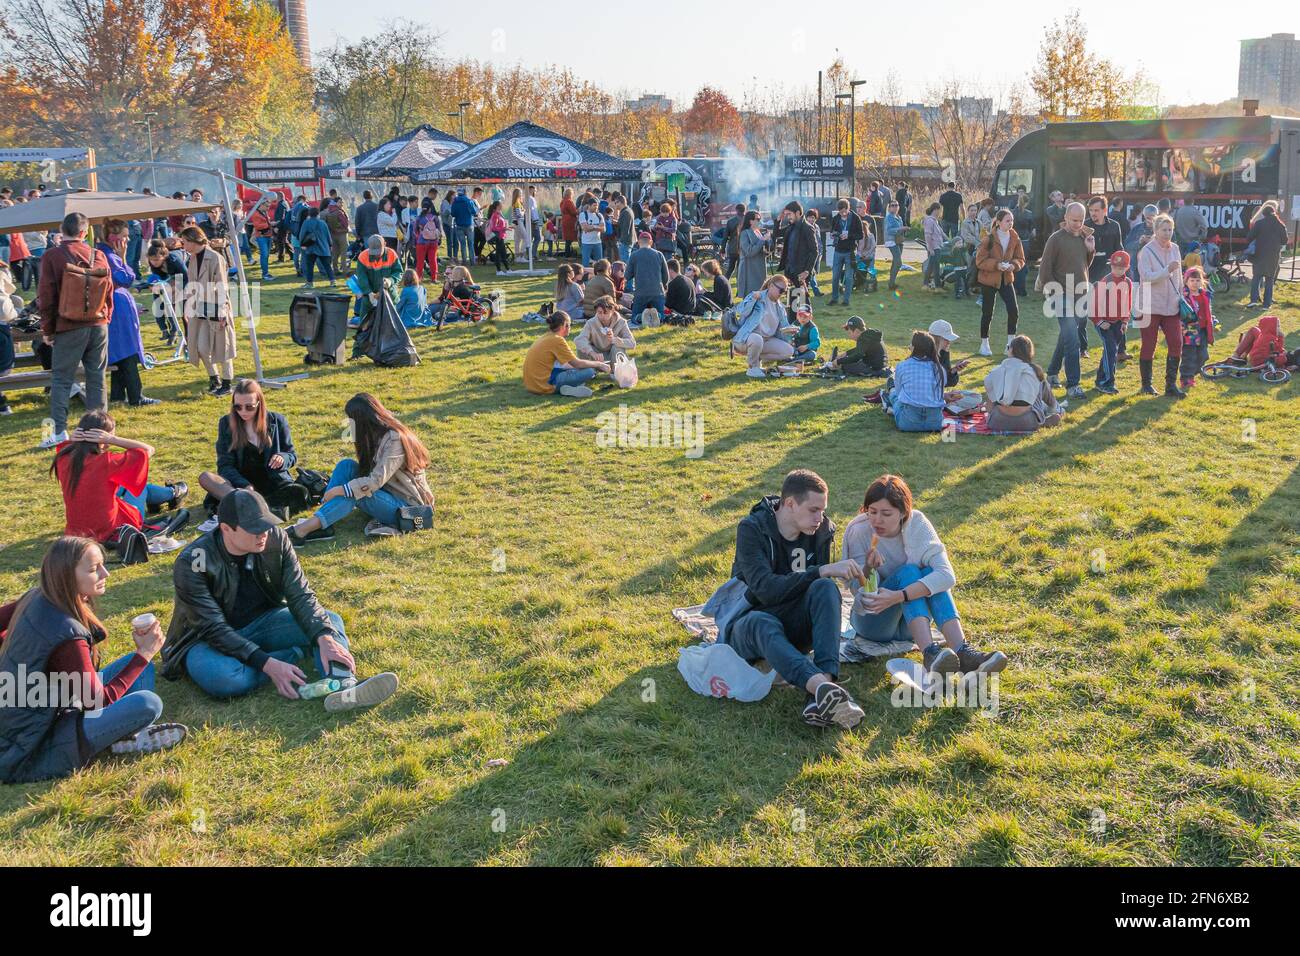 Kazan, Russia - 03 ottobre 2020: I residenti si rilassano, si siedono e si trovano sul prato nel parco cittadino, intorno al quale ci sono molti ristoranti mobili barbecue. Foto Stock